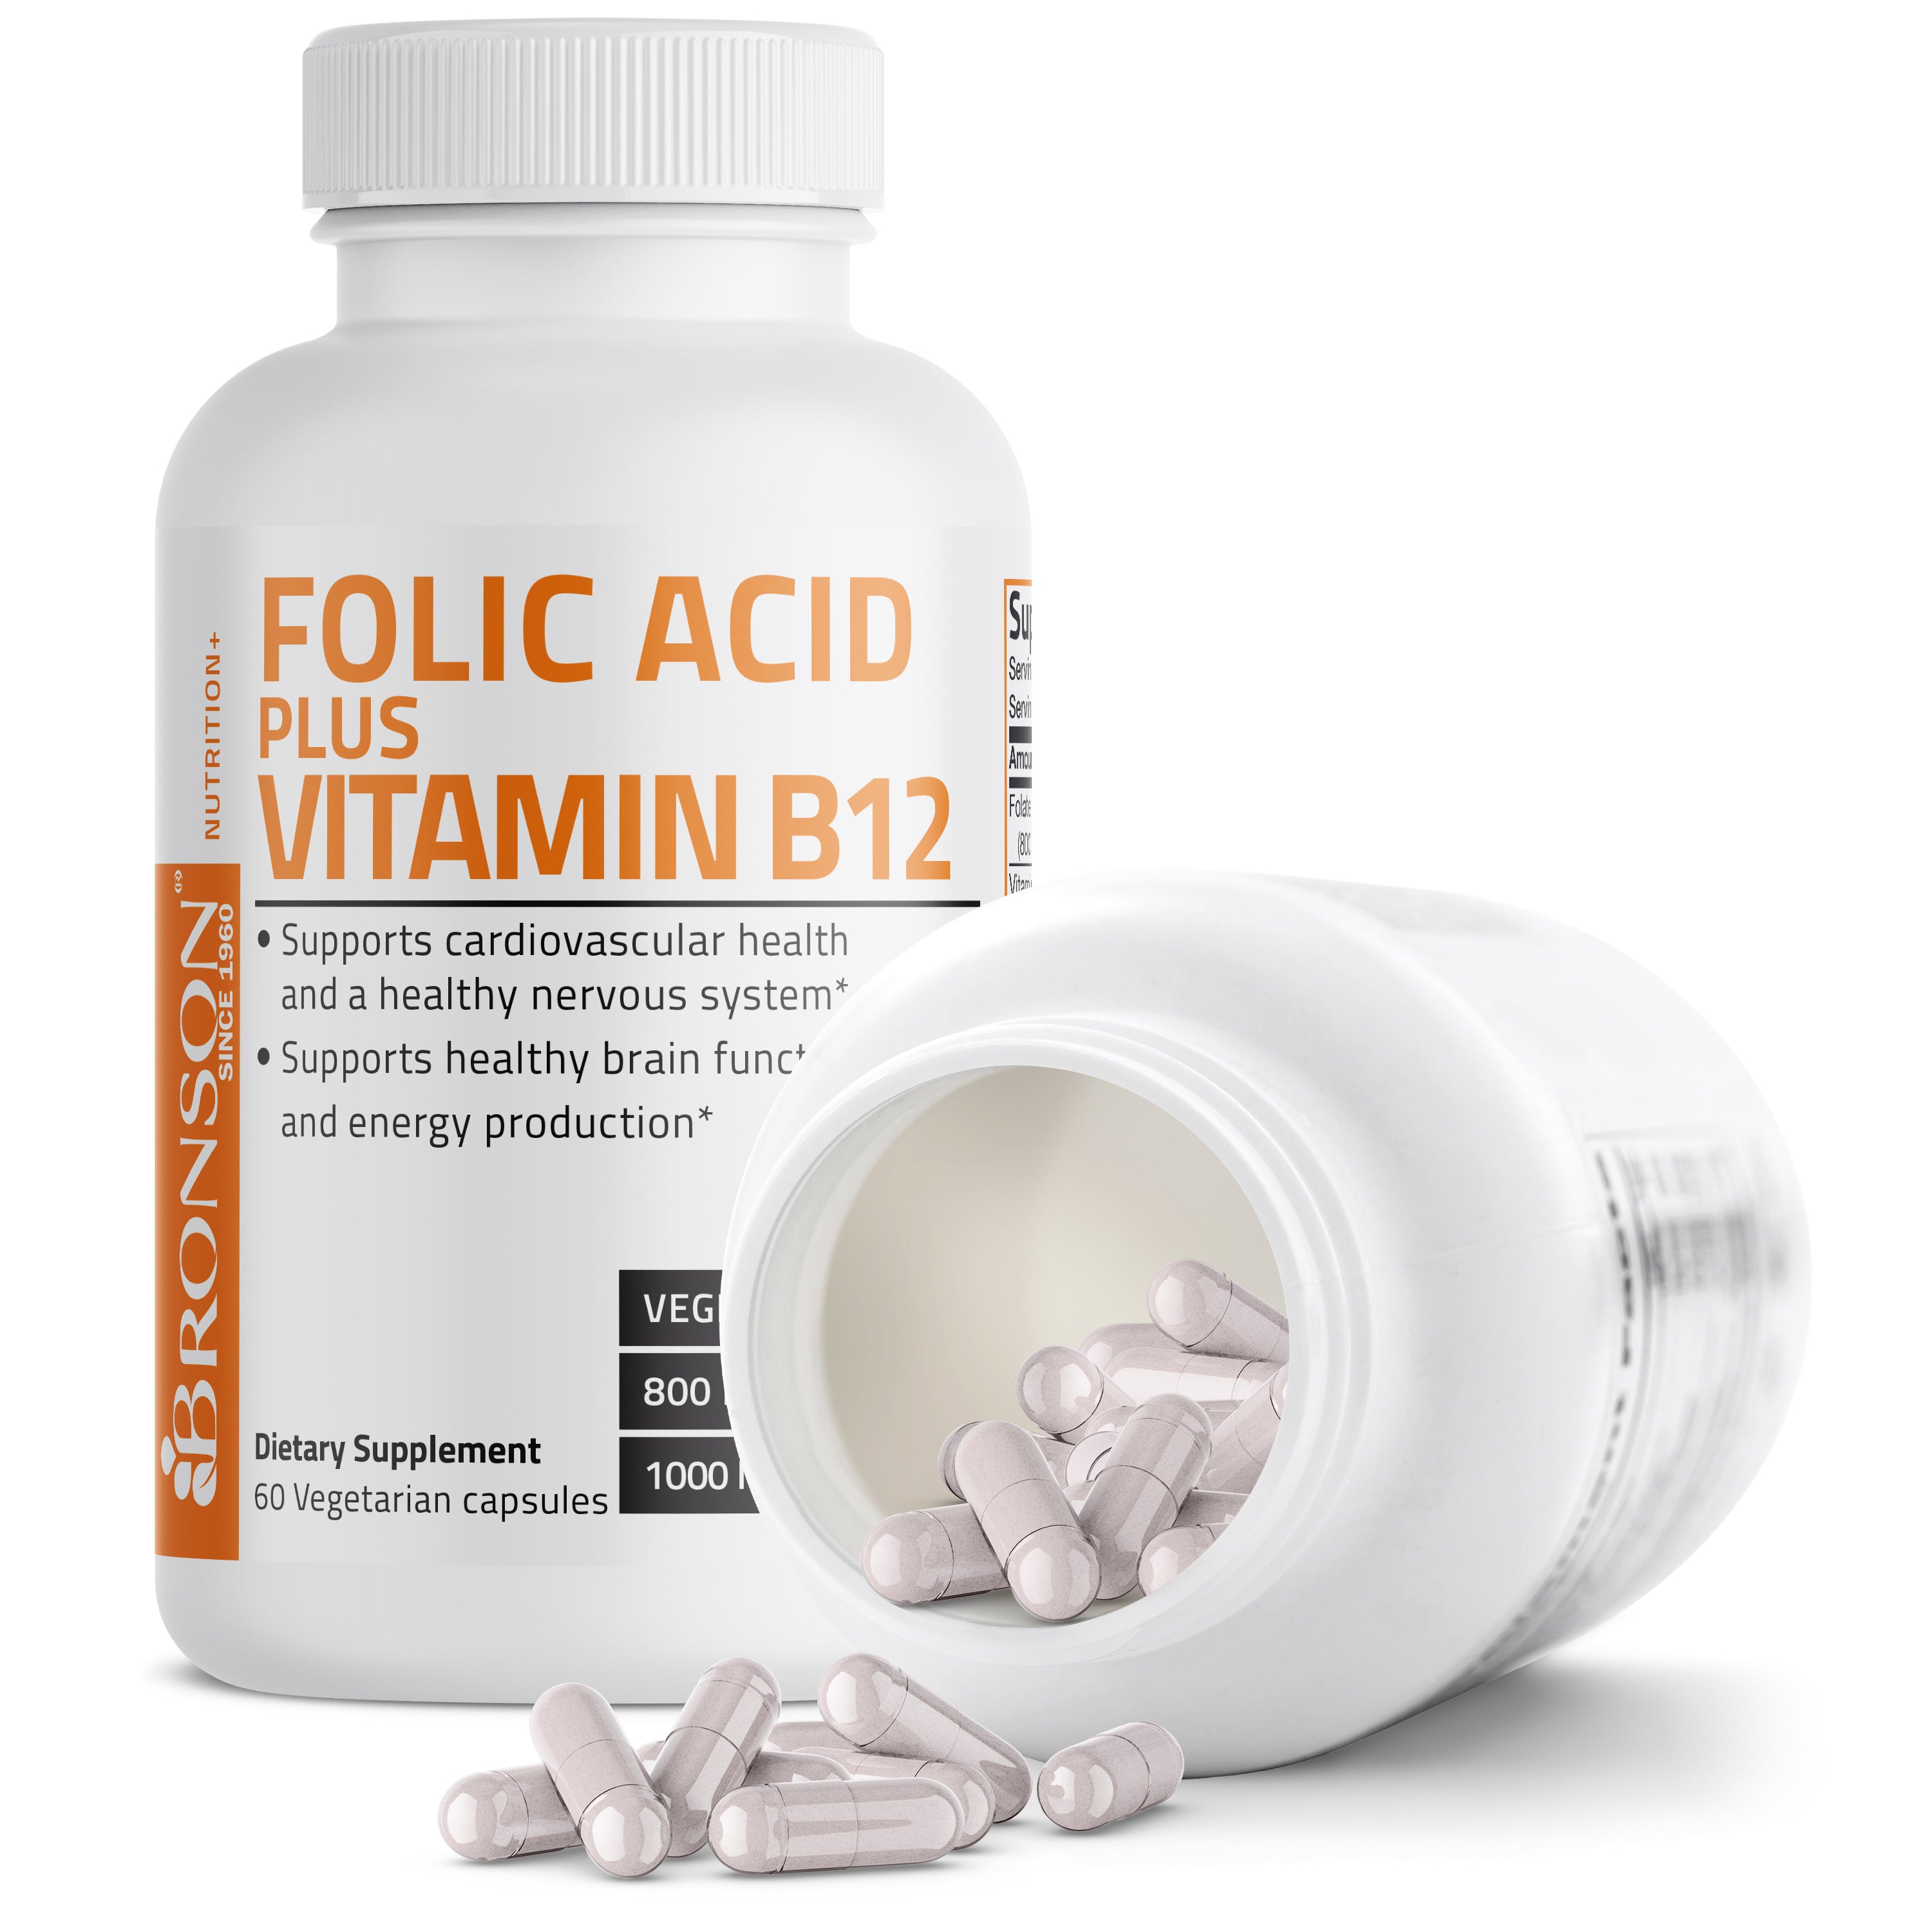 Folic Acid Plus Vitamin B12 - 60 Vegetarian Capsules view 5 of 6